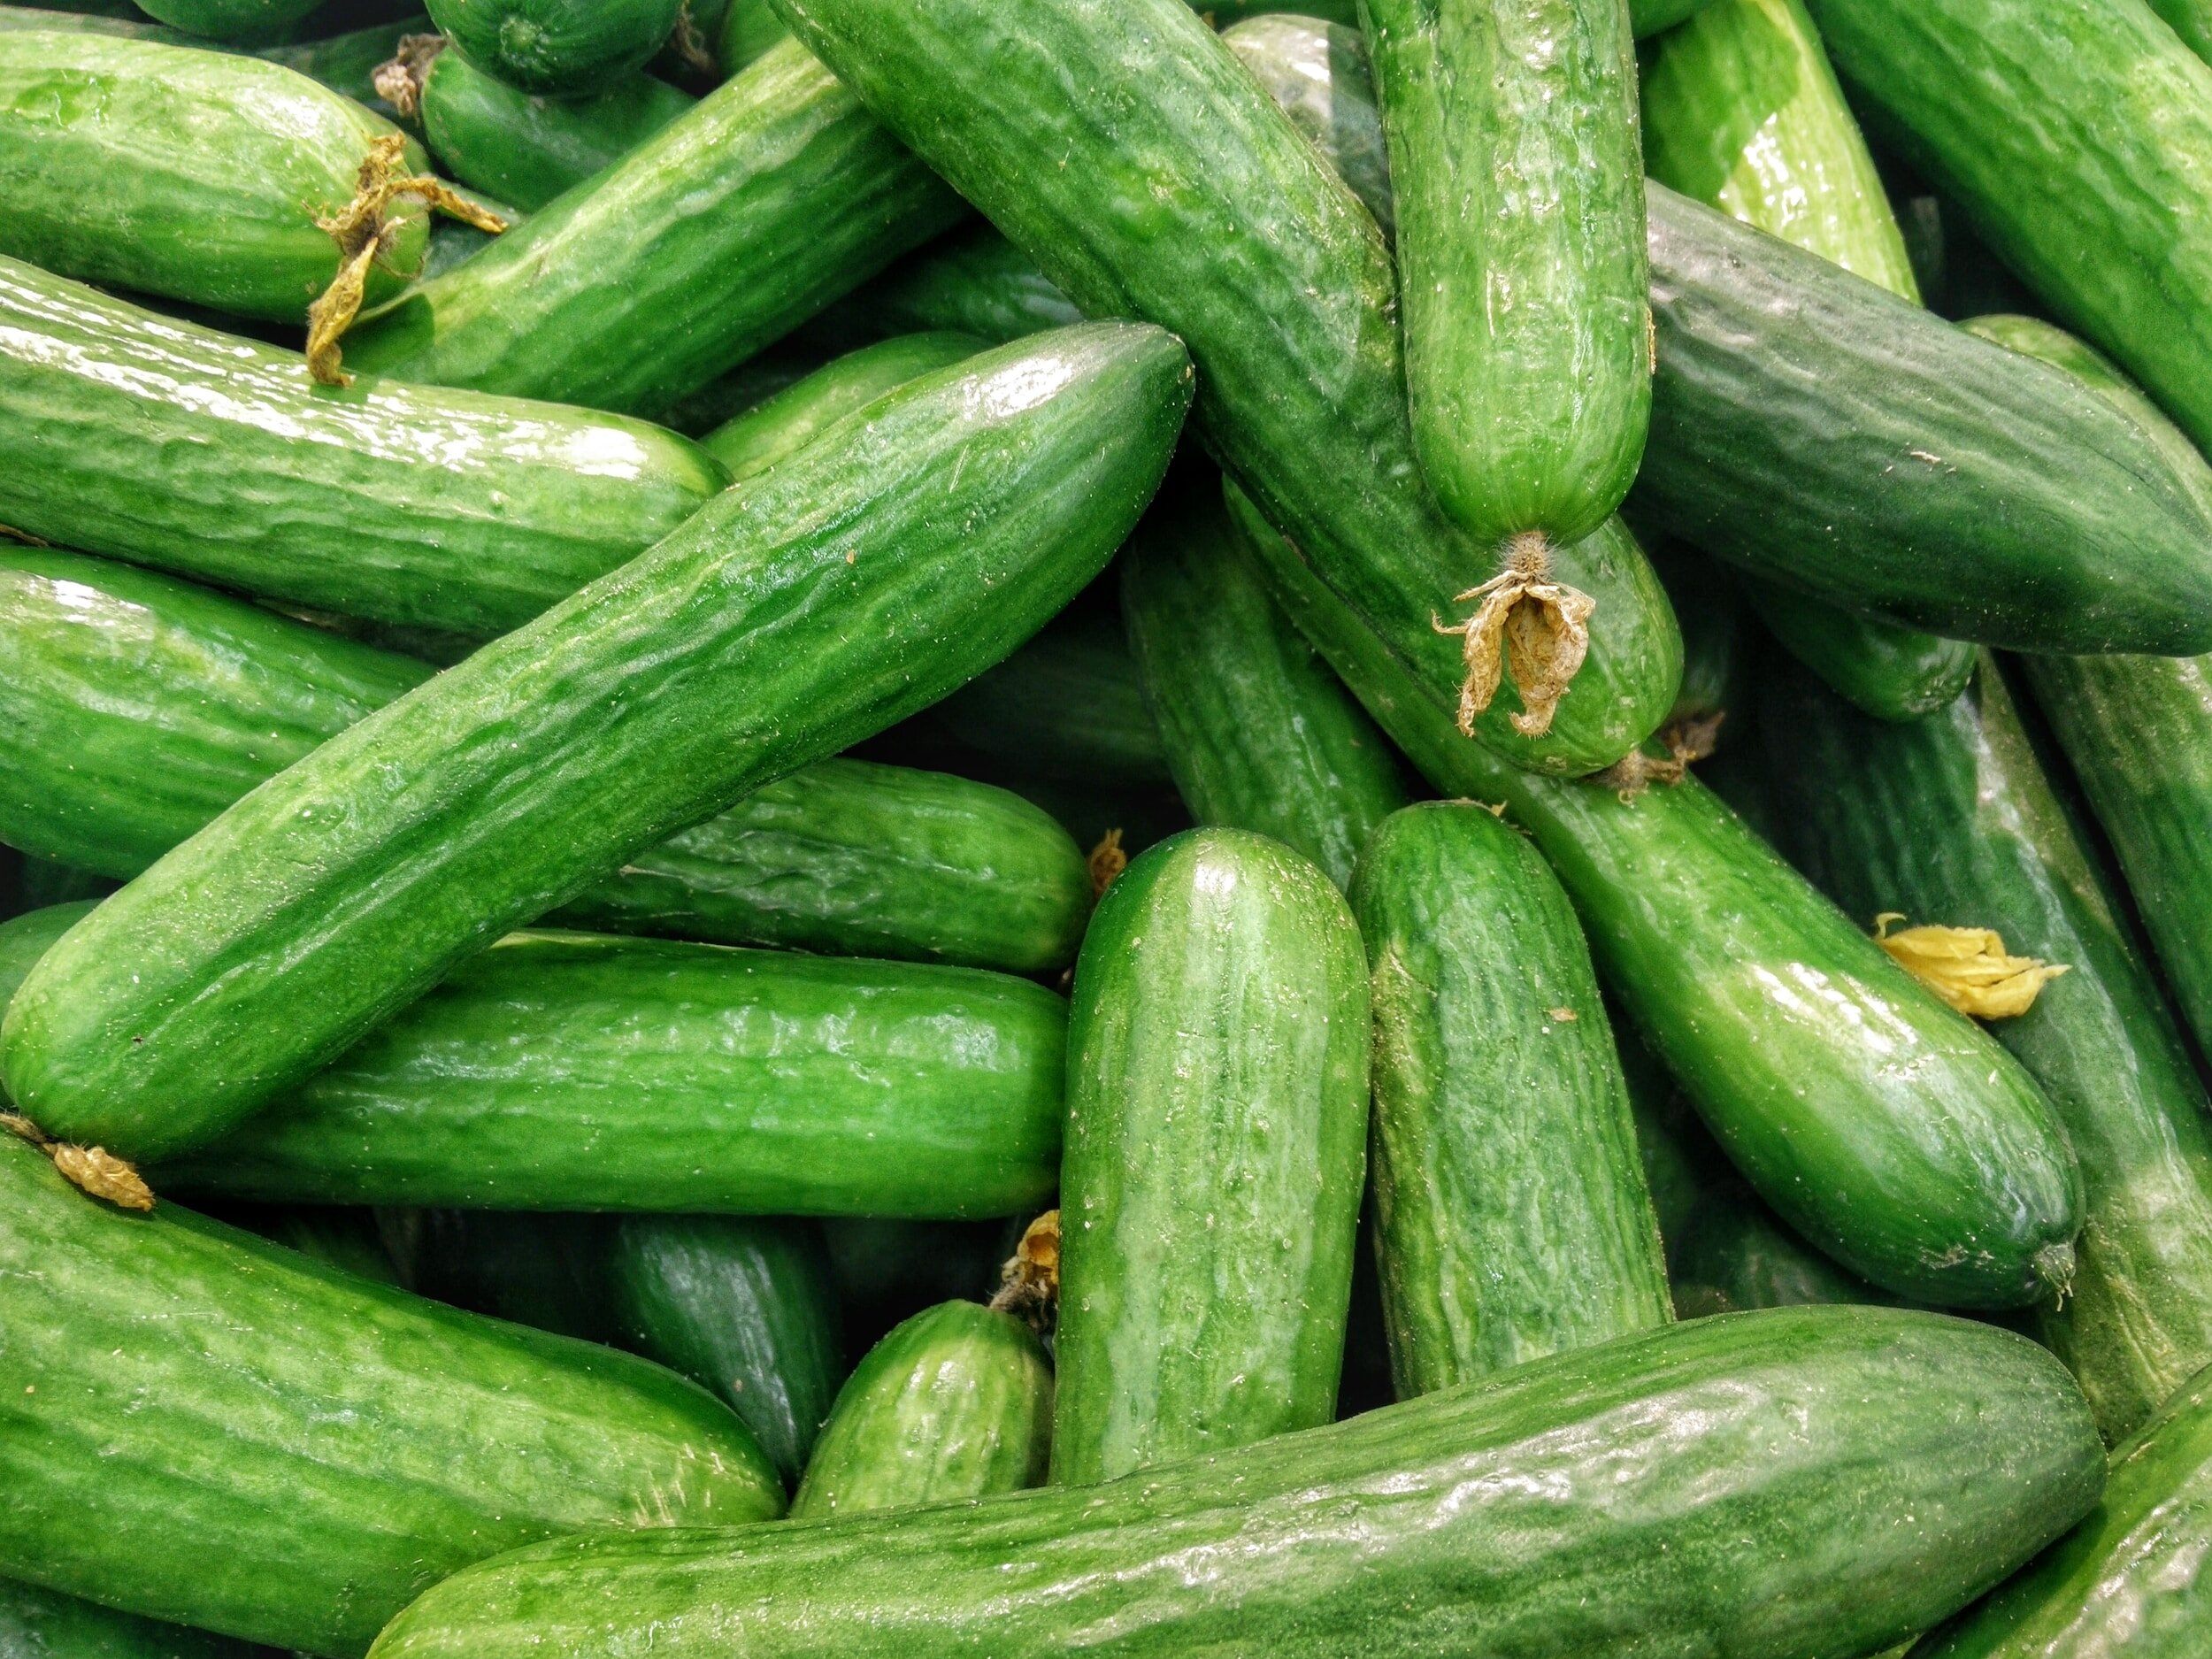 6. Cucumbers